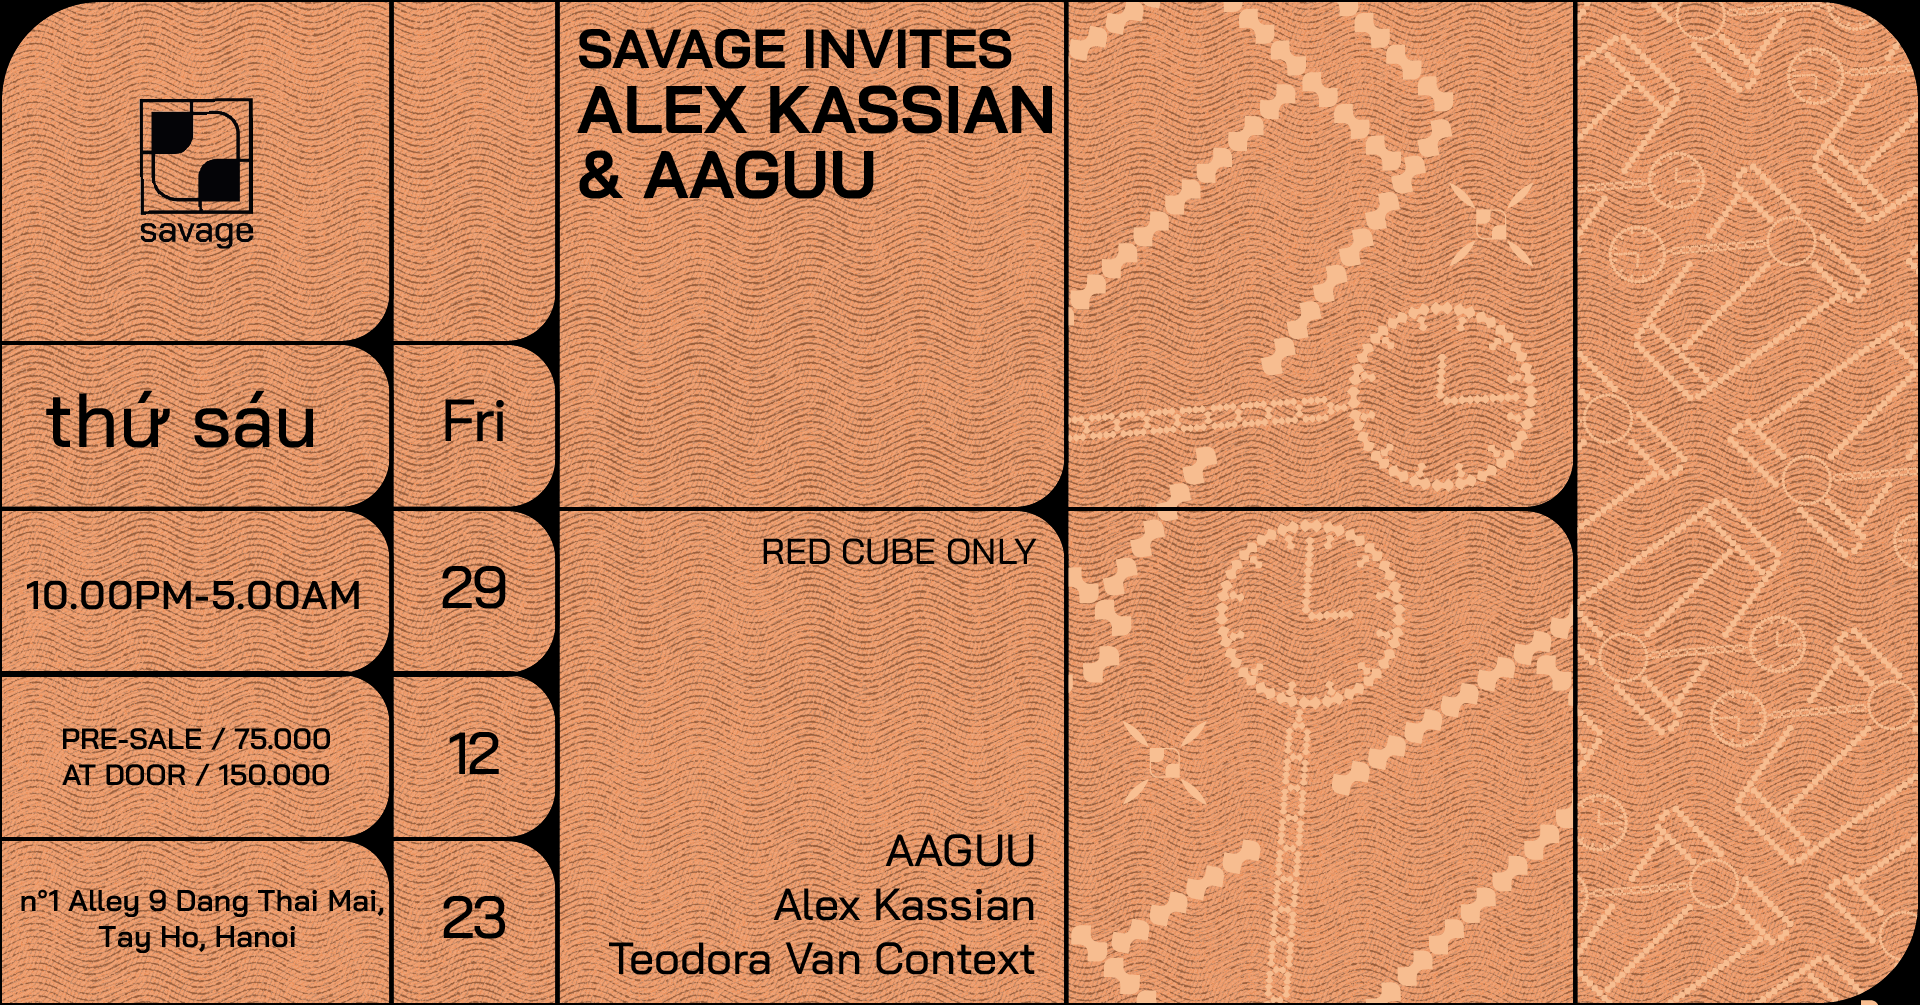 Savage Invites Alex Kassian & AAGUU - Página trasera